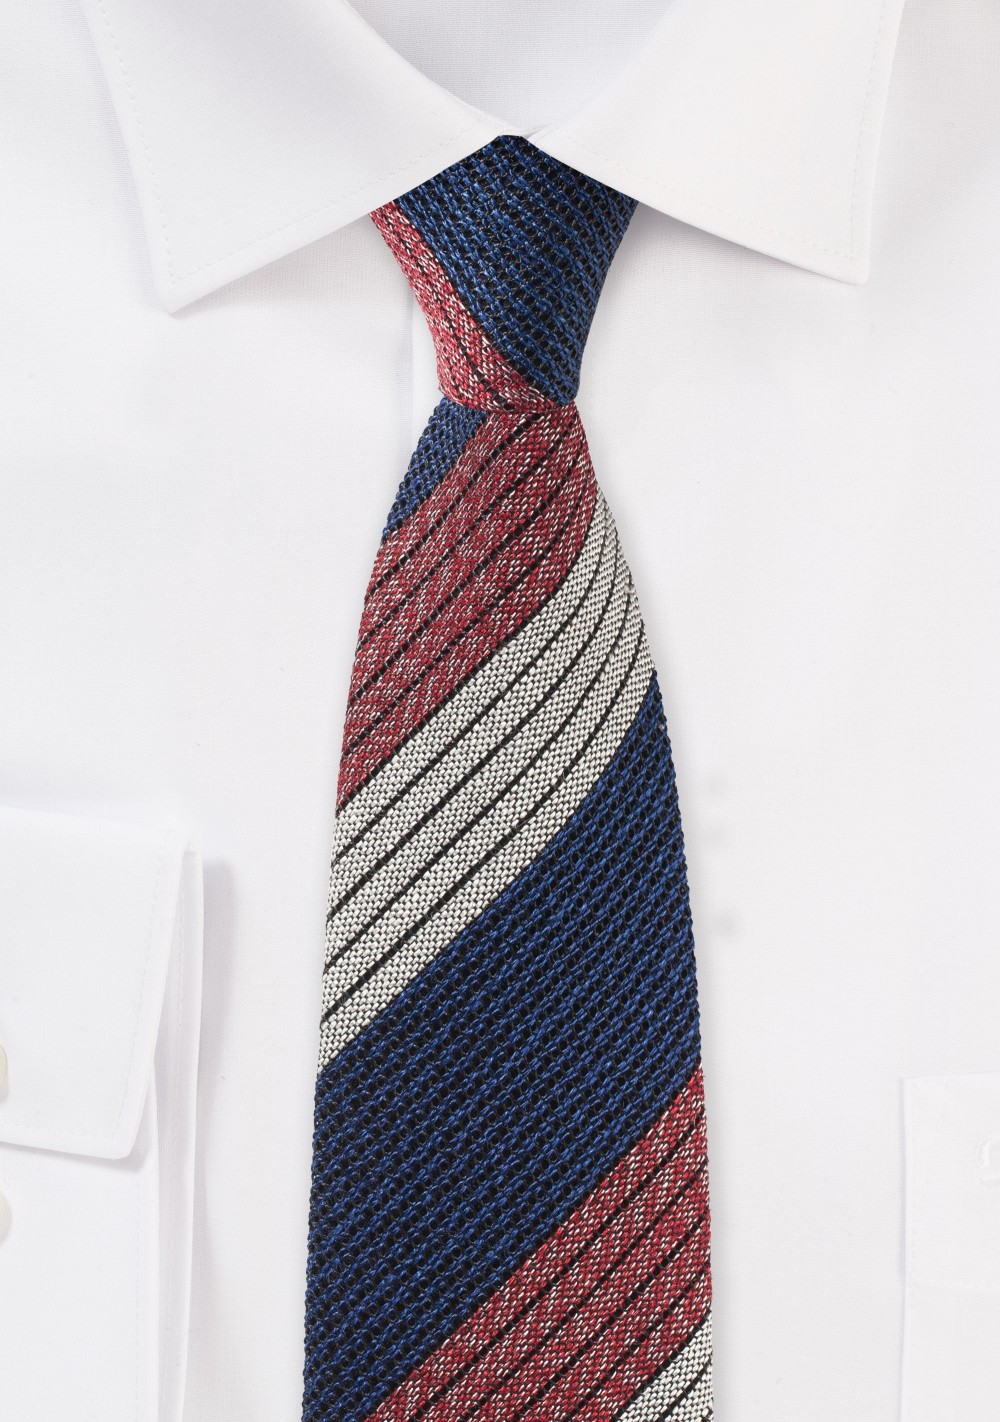 Retro Striped Tie in Knit Texture